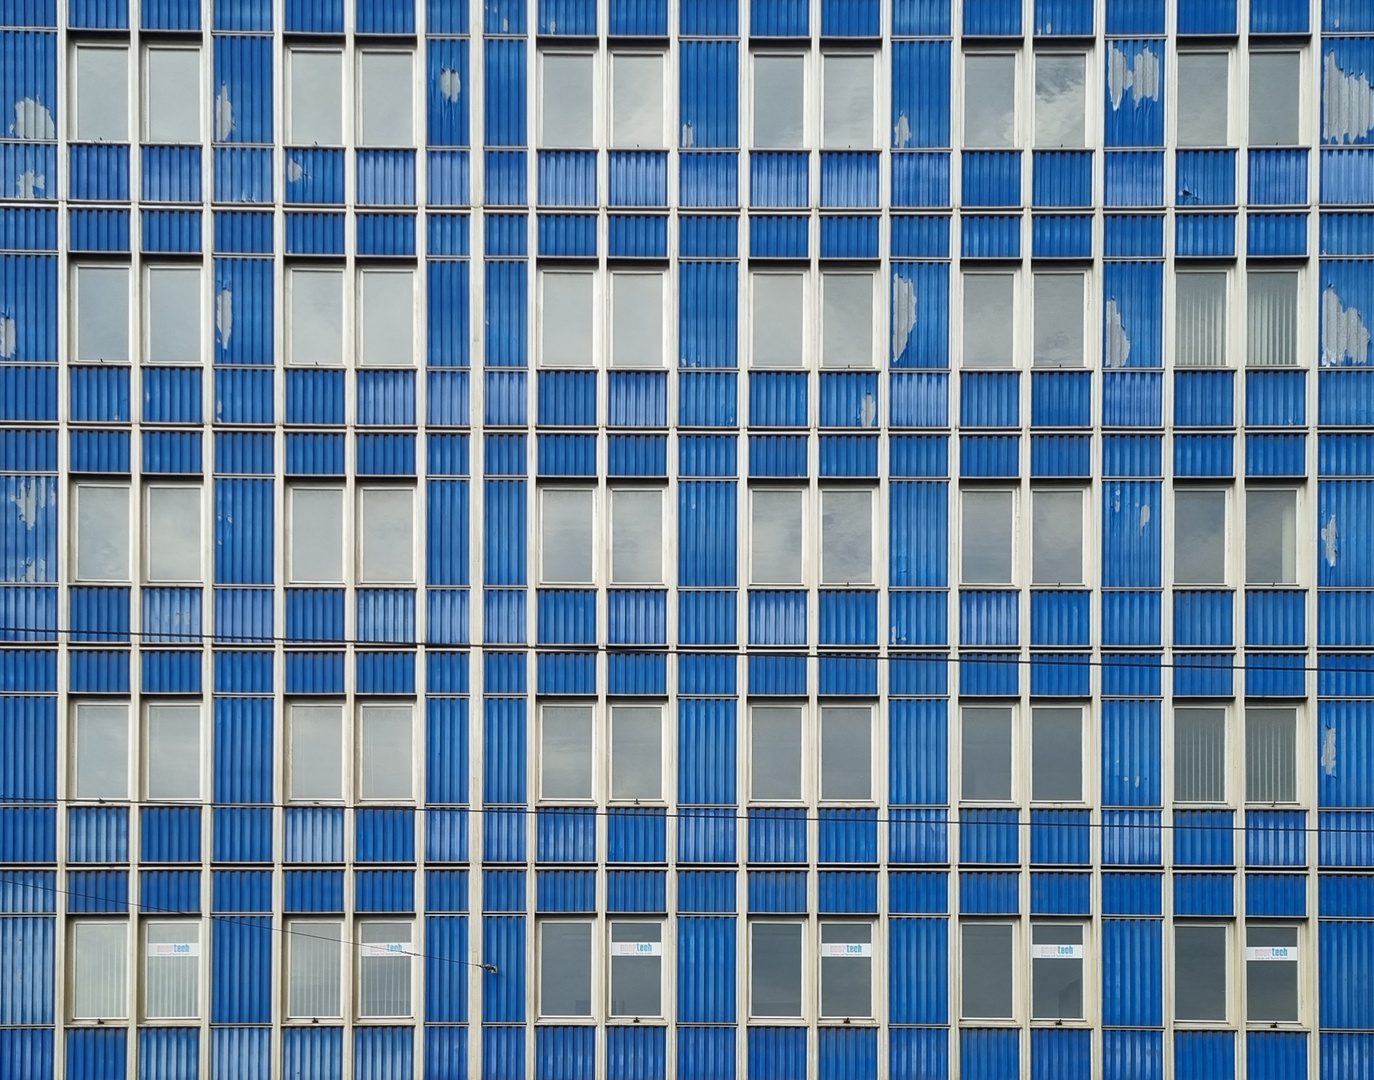 Fassade in blue